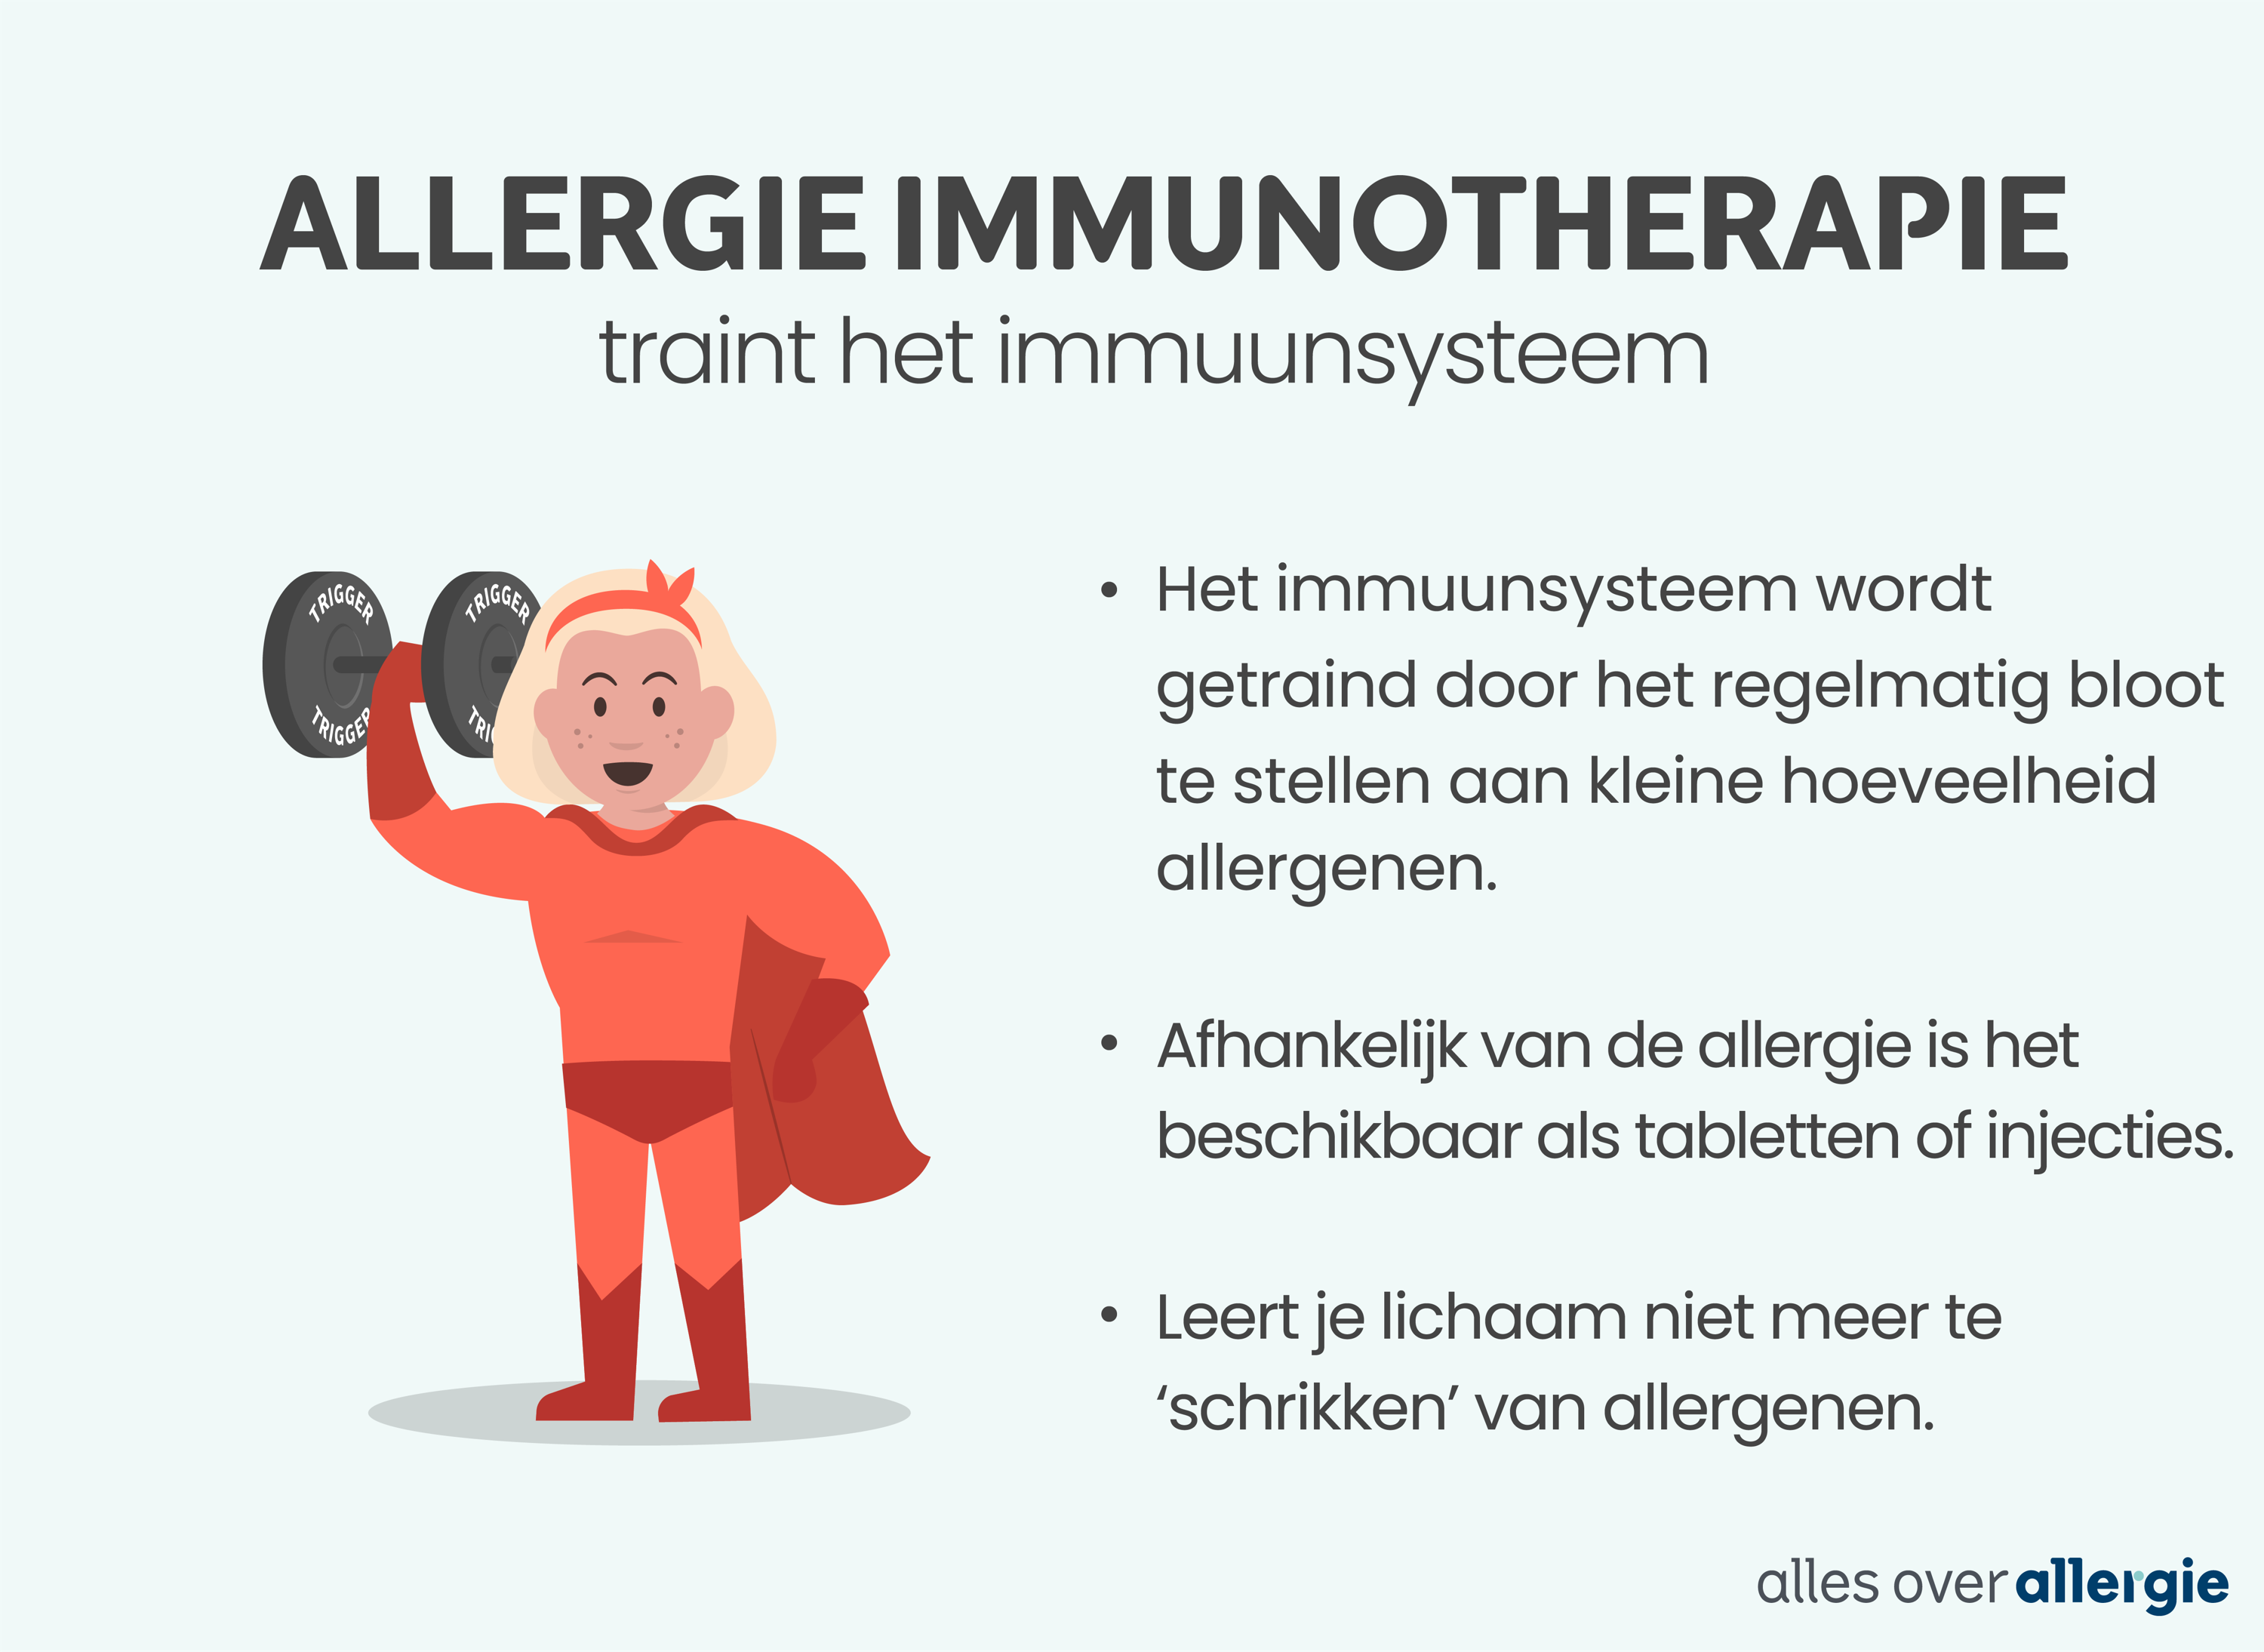  Infographic over allergie immunotherapie; dit is allergiemedicatie voor kinderen die het immuunsysteem traint en kan de allergieklachten verlichten. 